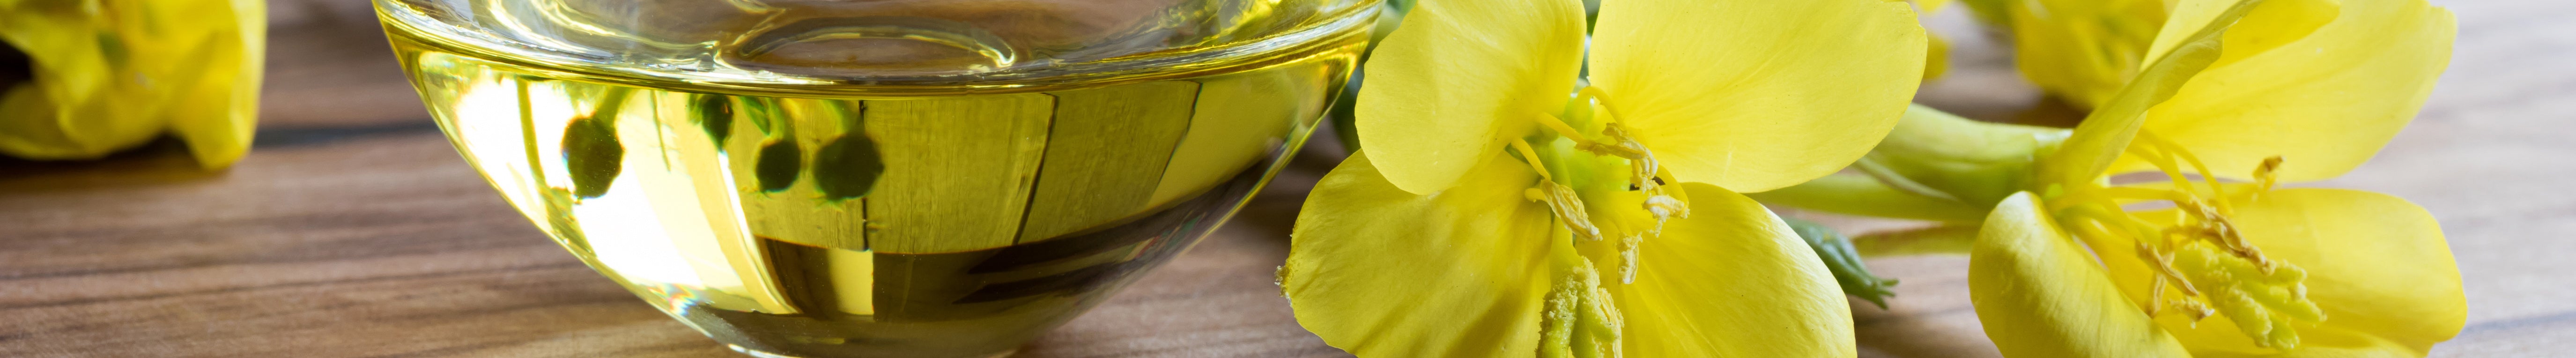 evening primrose oil